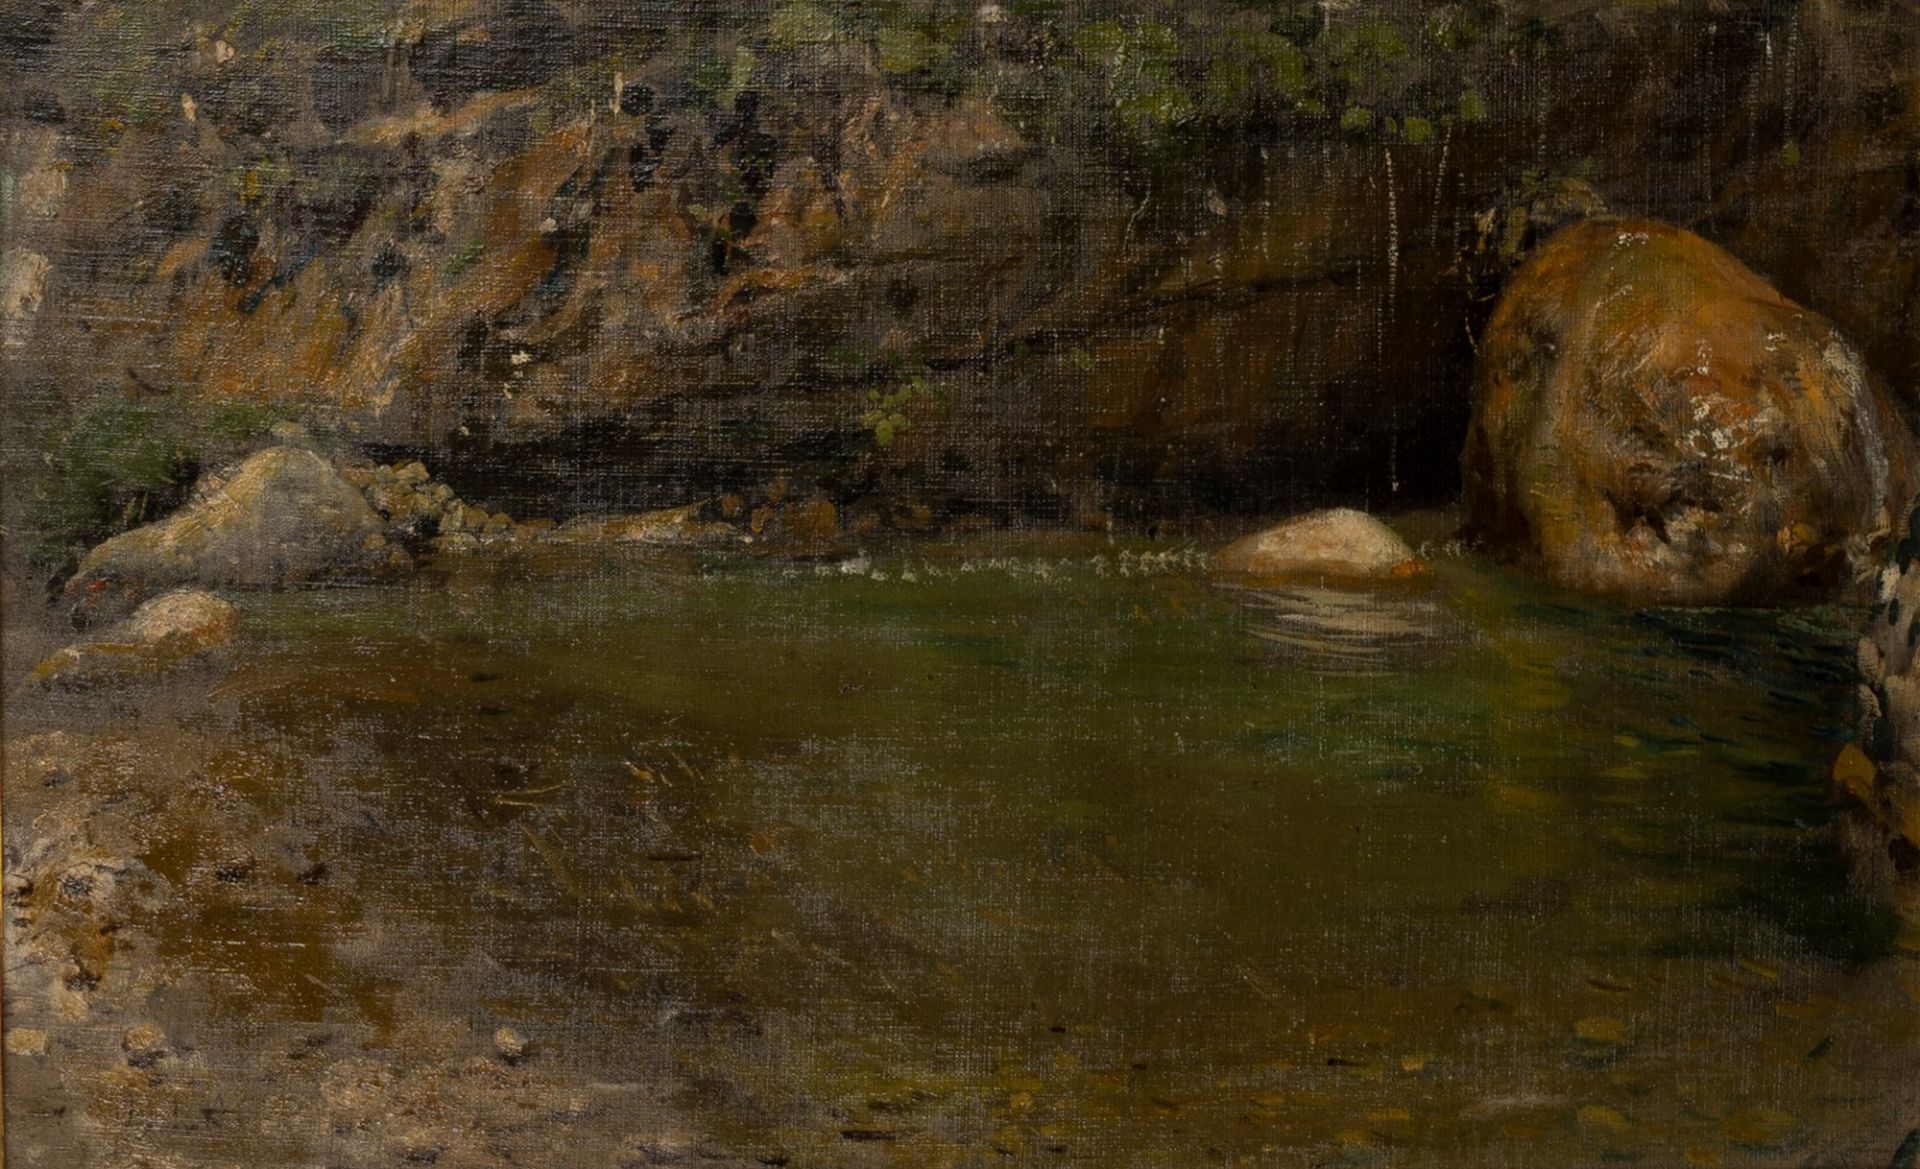 Francesco Paolo Michetti (Tocco di Casauria 1851-Francavilla al Mare 1929) - The Orfento river, ci